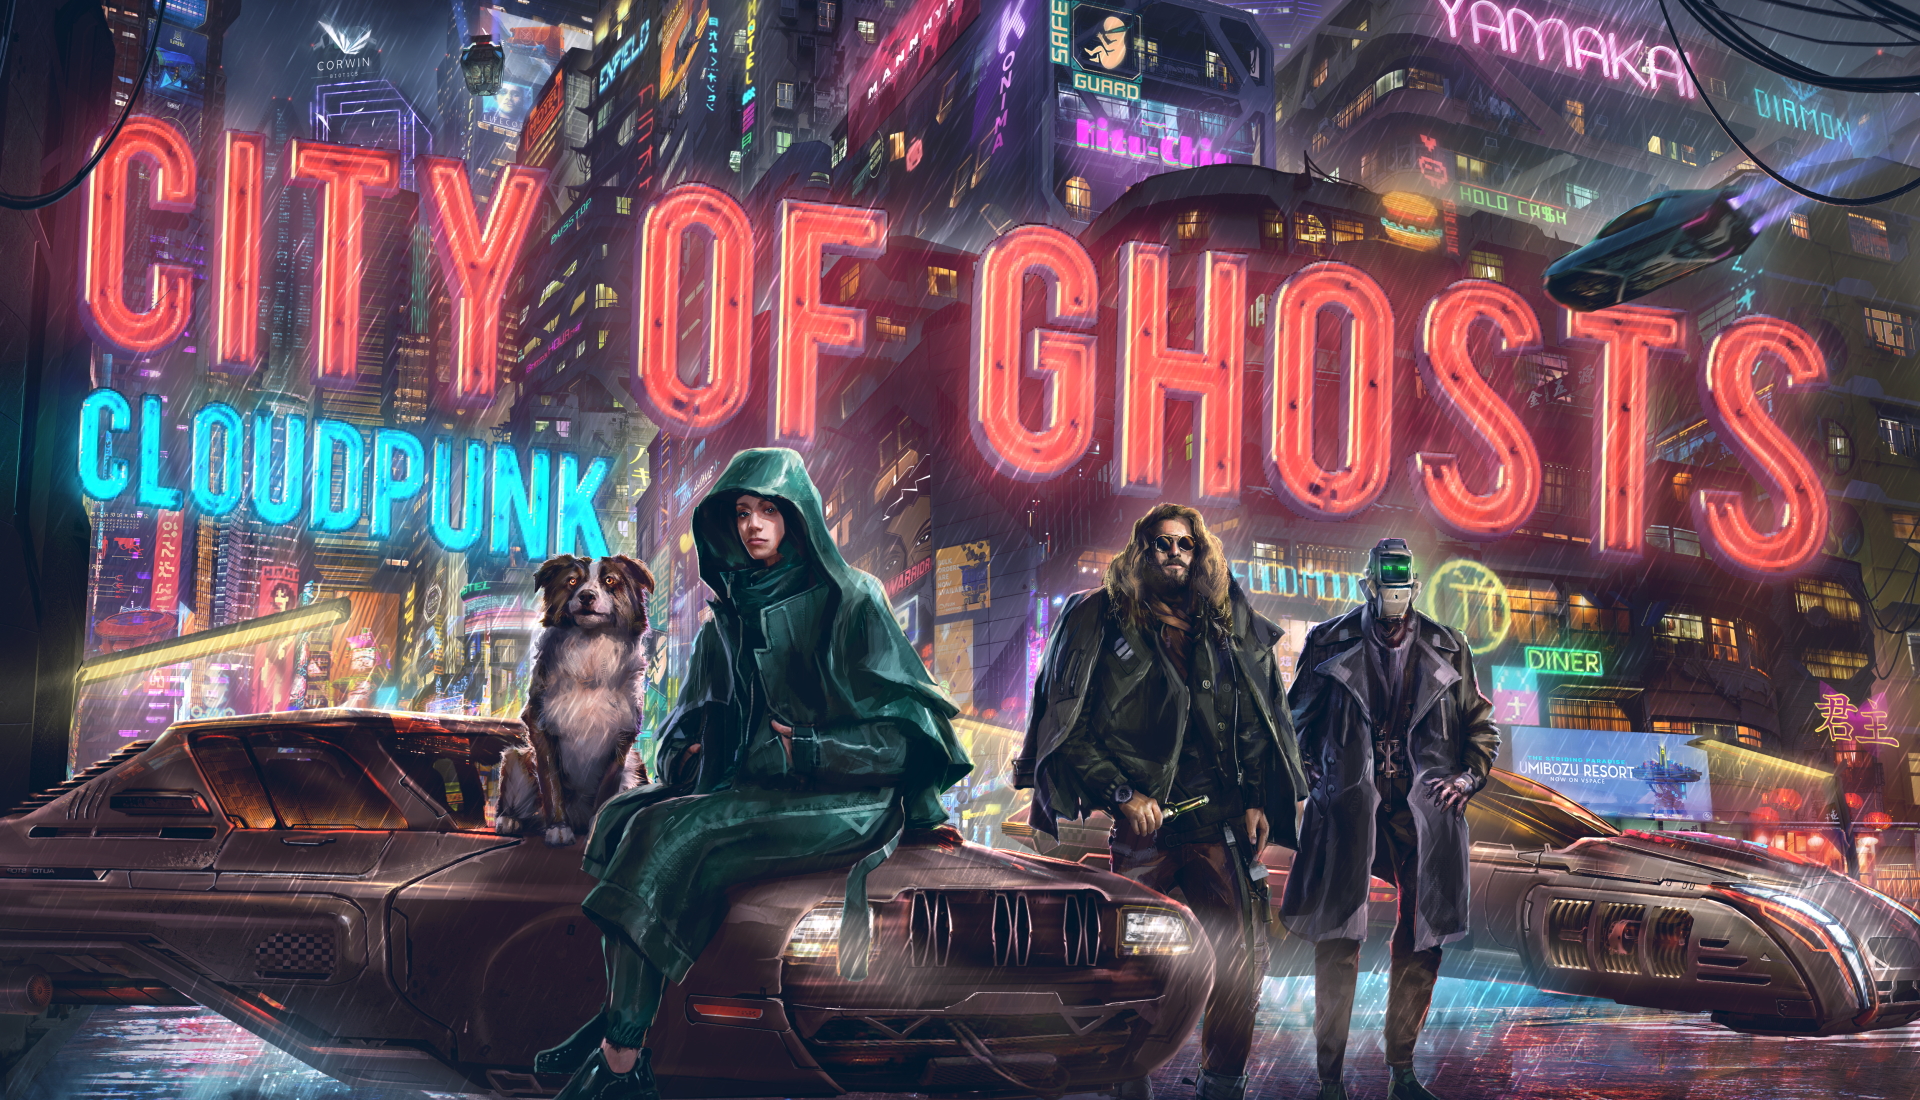 Cloudpunk annonce un premier DLC ambitieux, City of Ghosts, pour 